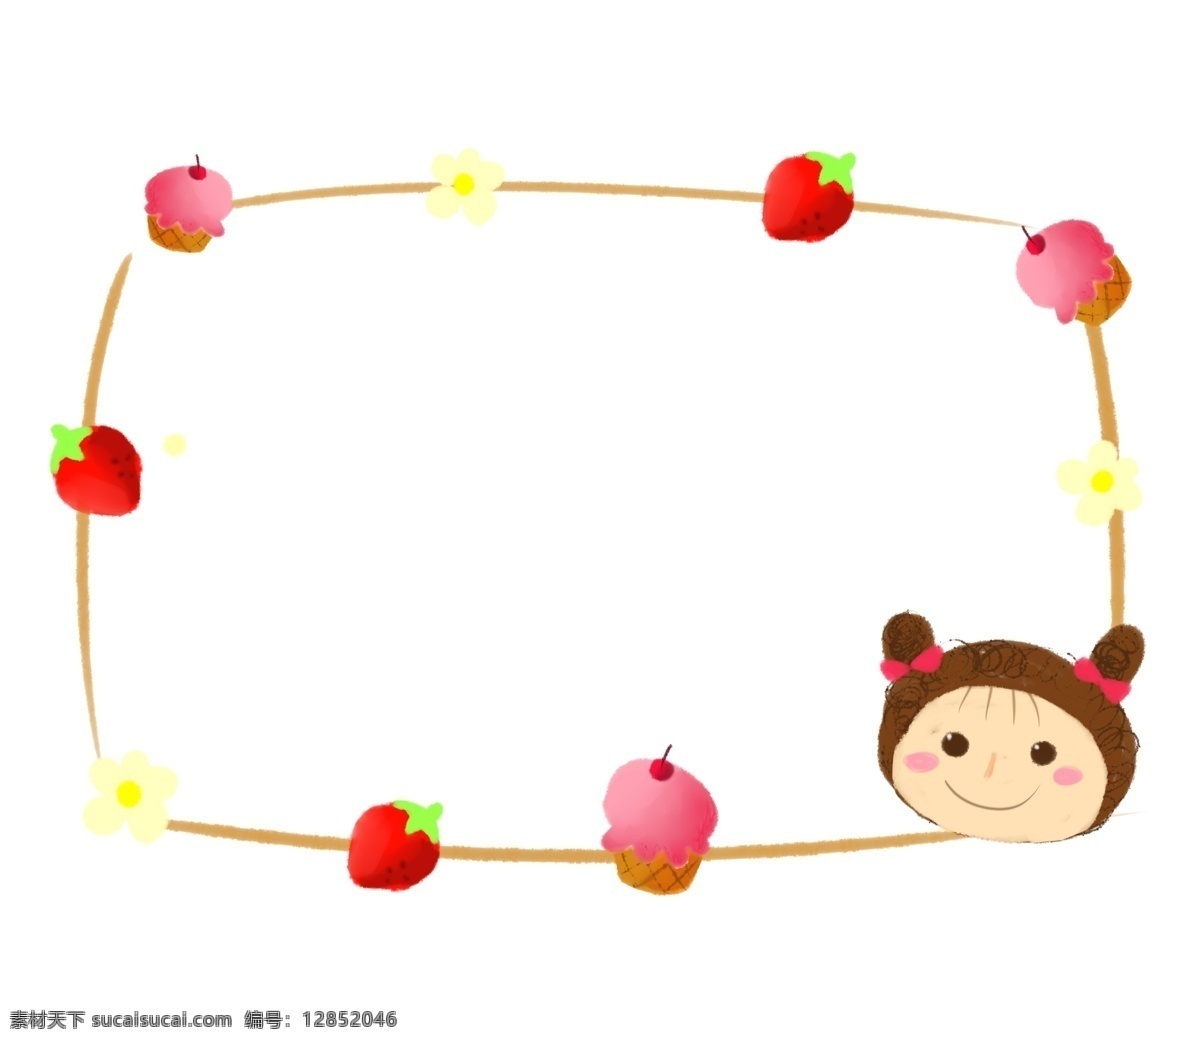 手绘 草莓 边框 插画 可爱的小孩 卡通插画 手绘插画 边框插画 草莓的边框 红色的草莓 水果 蛋糕